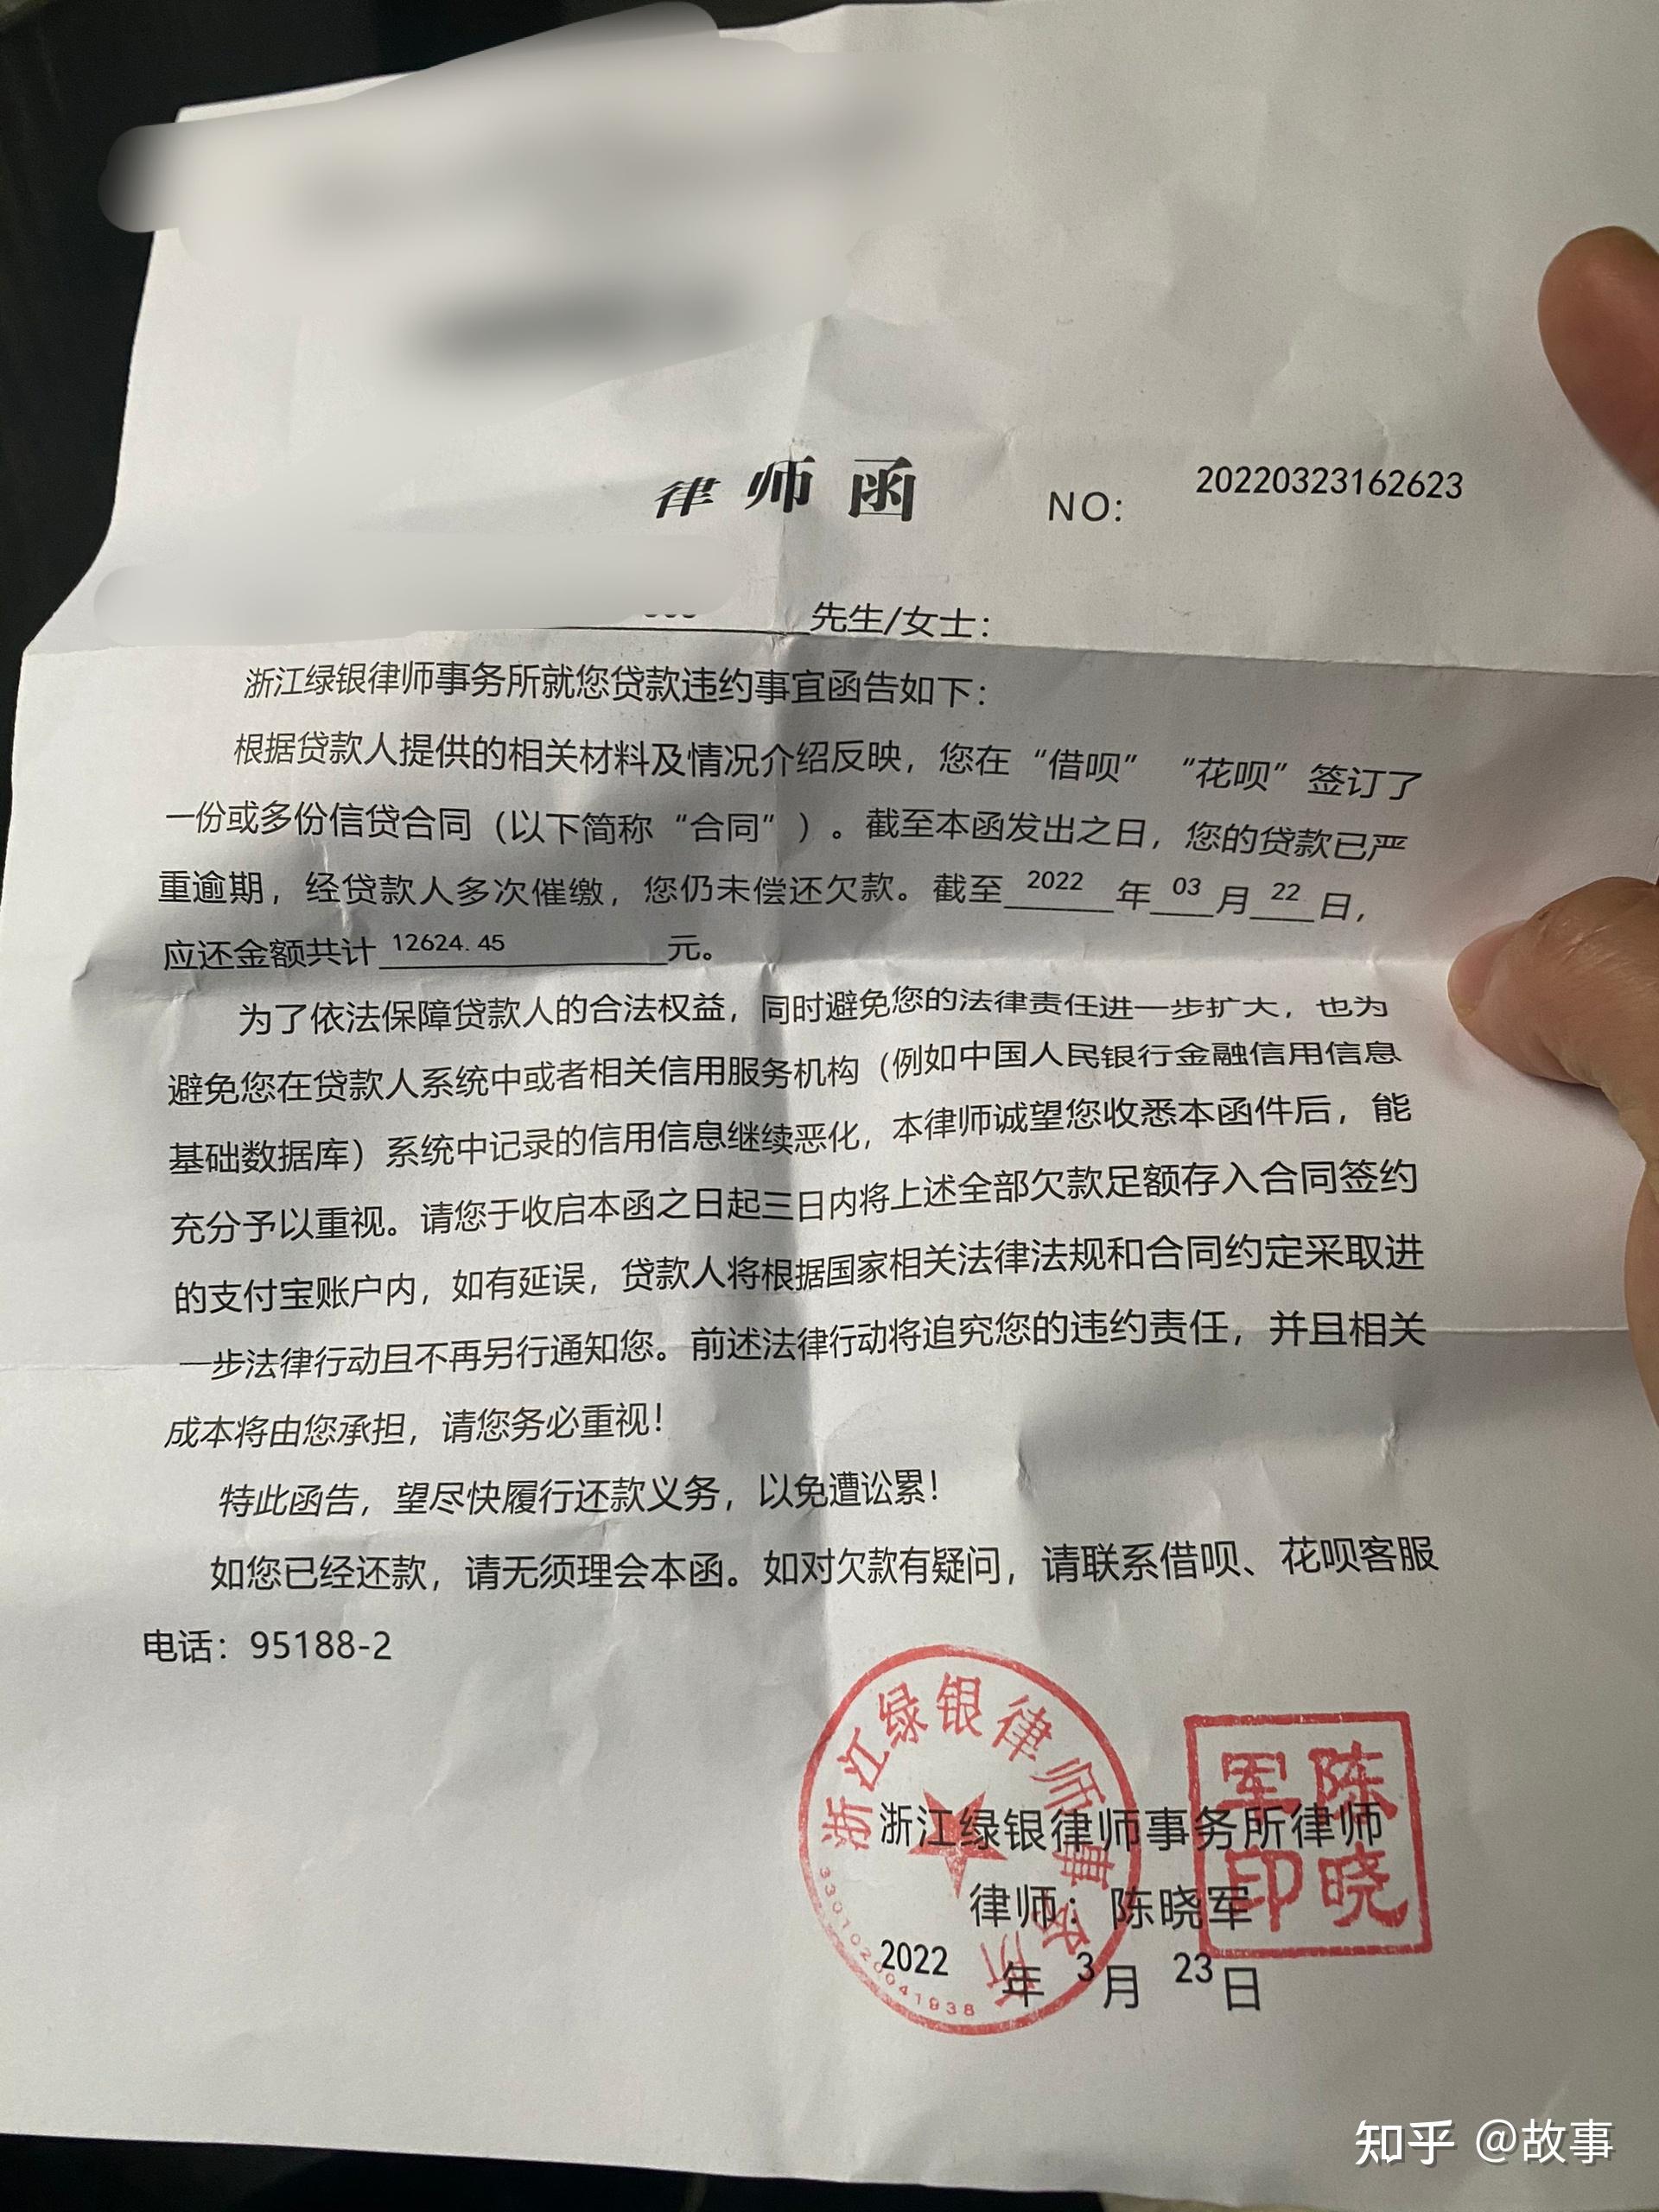 收到了浙江绿银律师事务所的律师函,说要在三日内还清花呗借呗的欠款